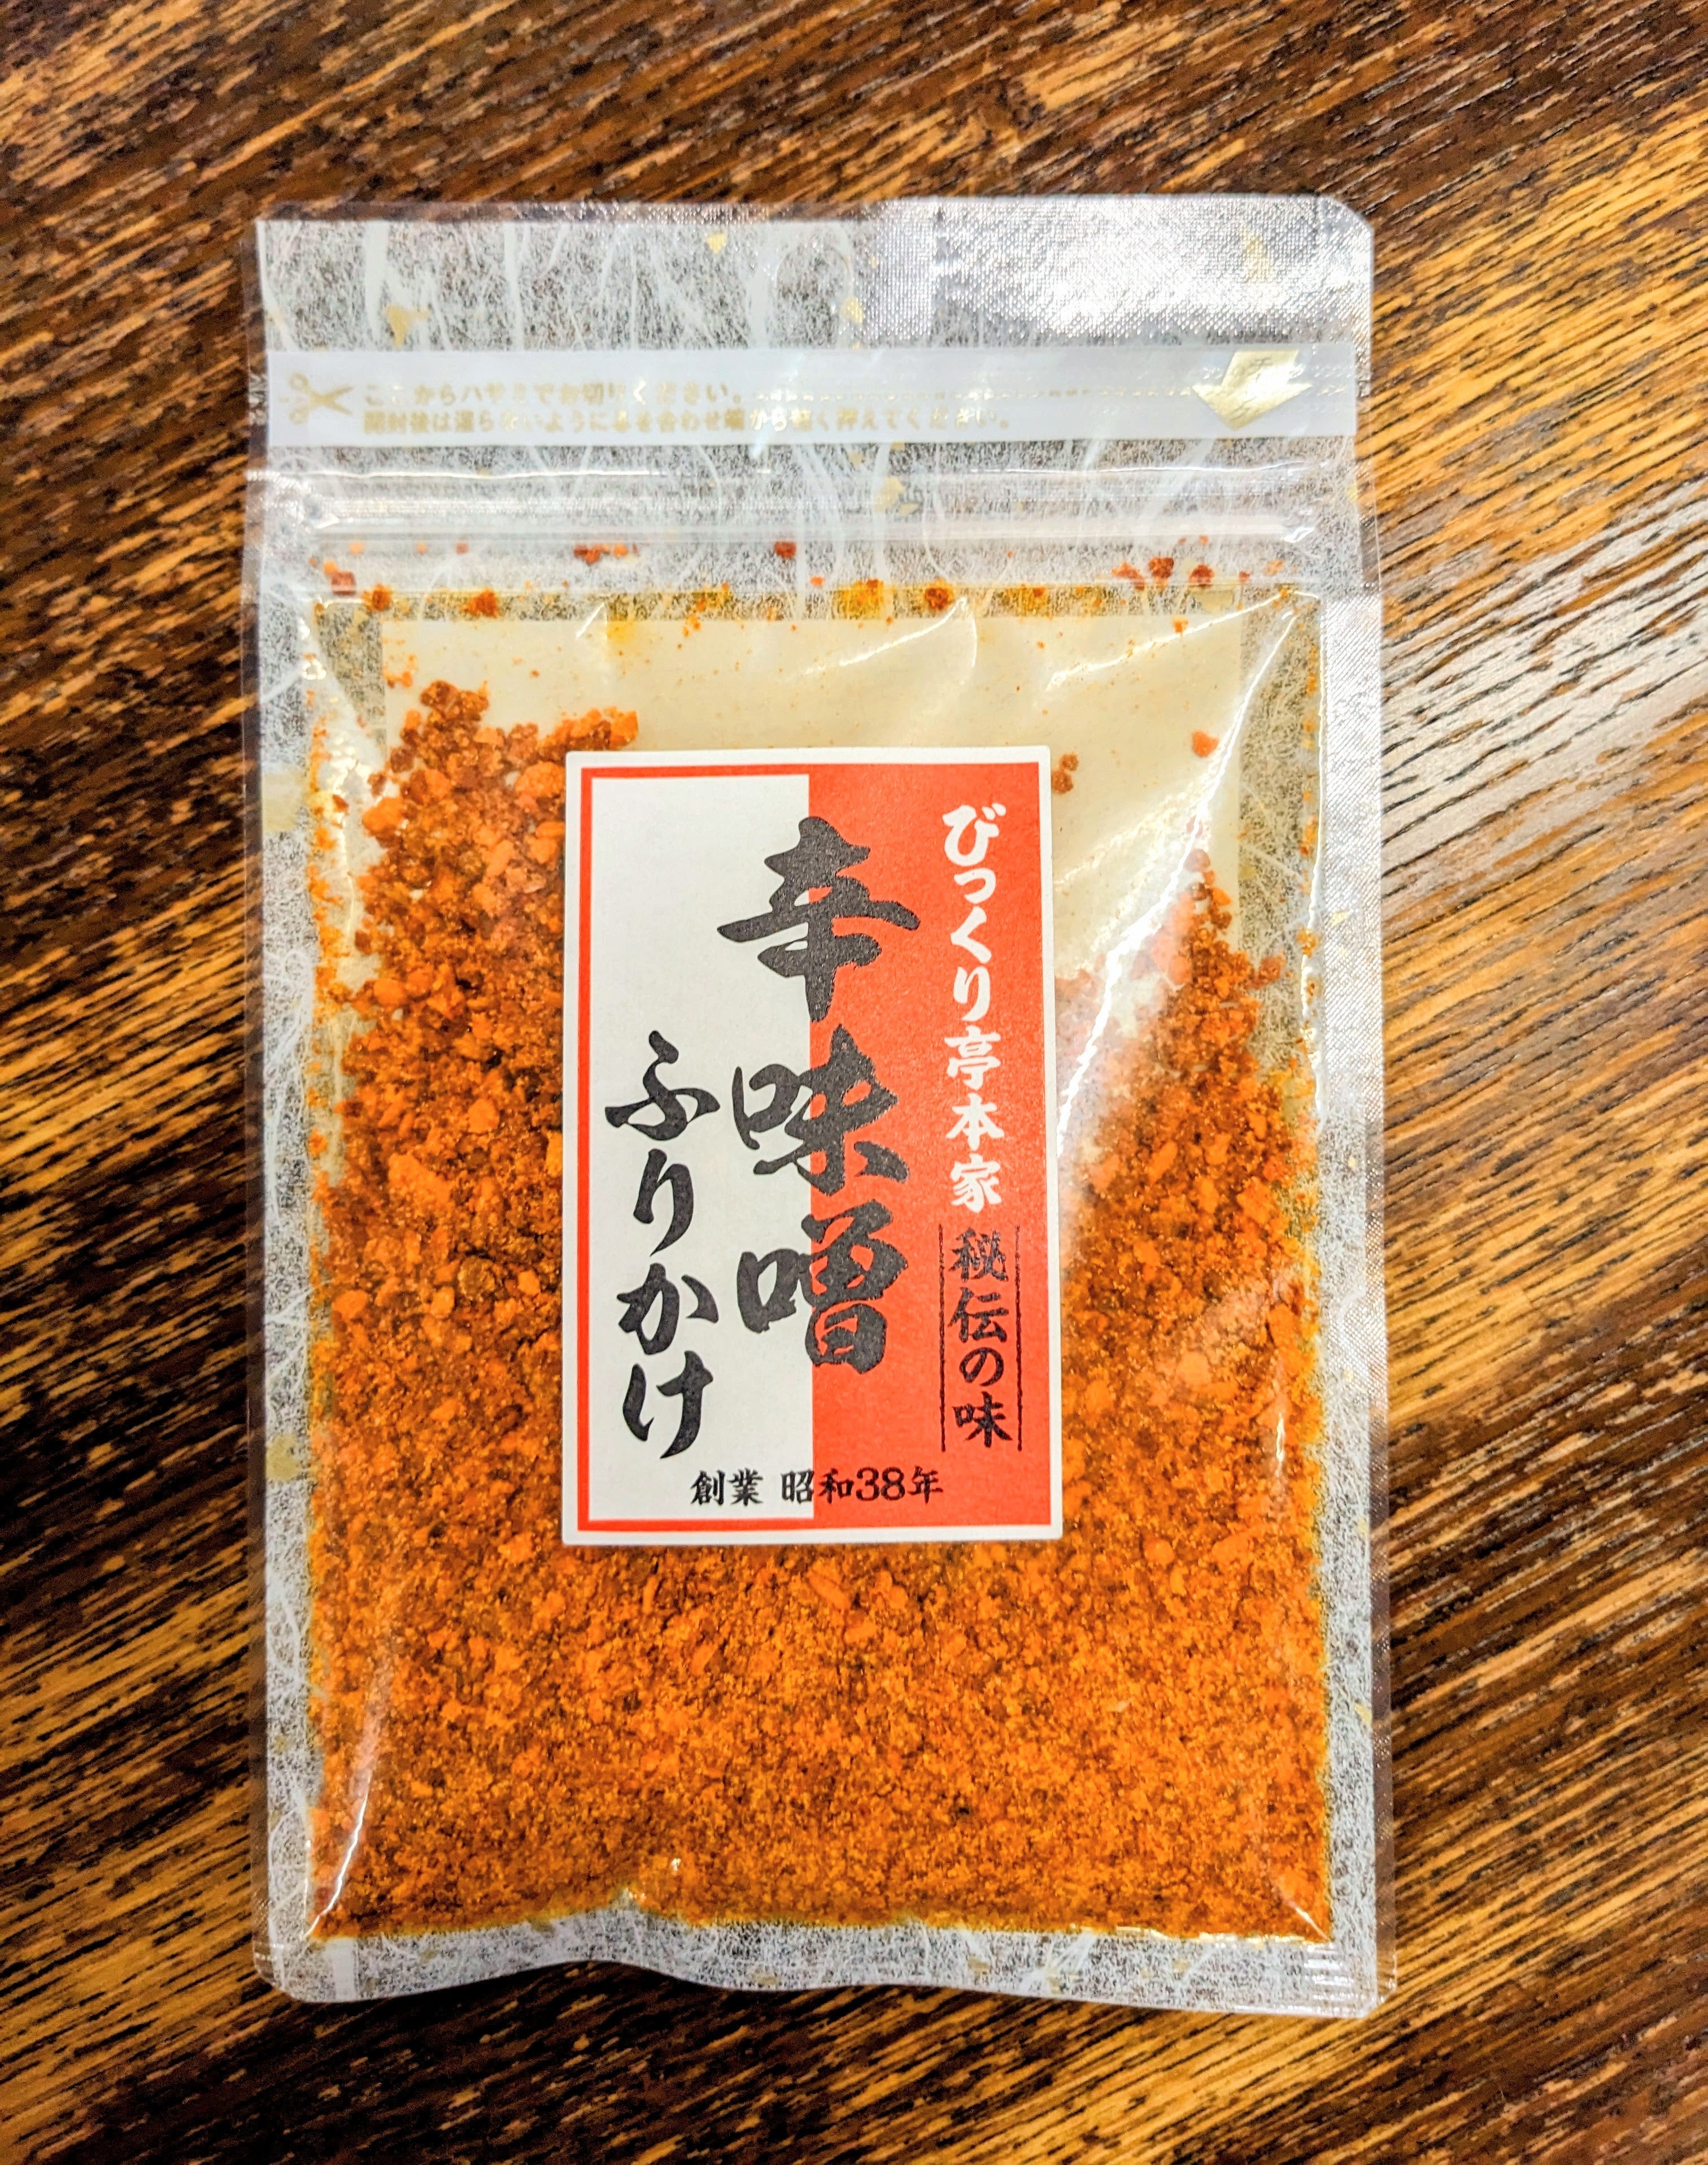 Furikake Spice Mix Japanese Food Craftsman Shop